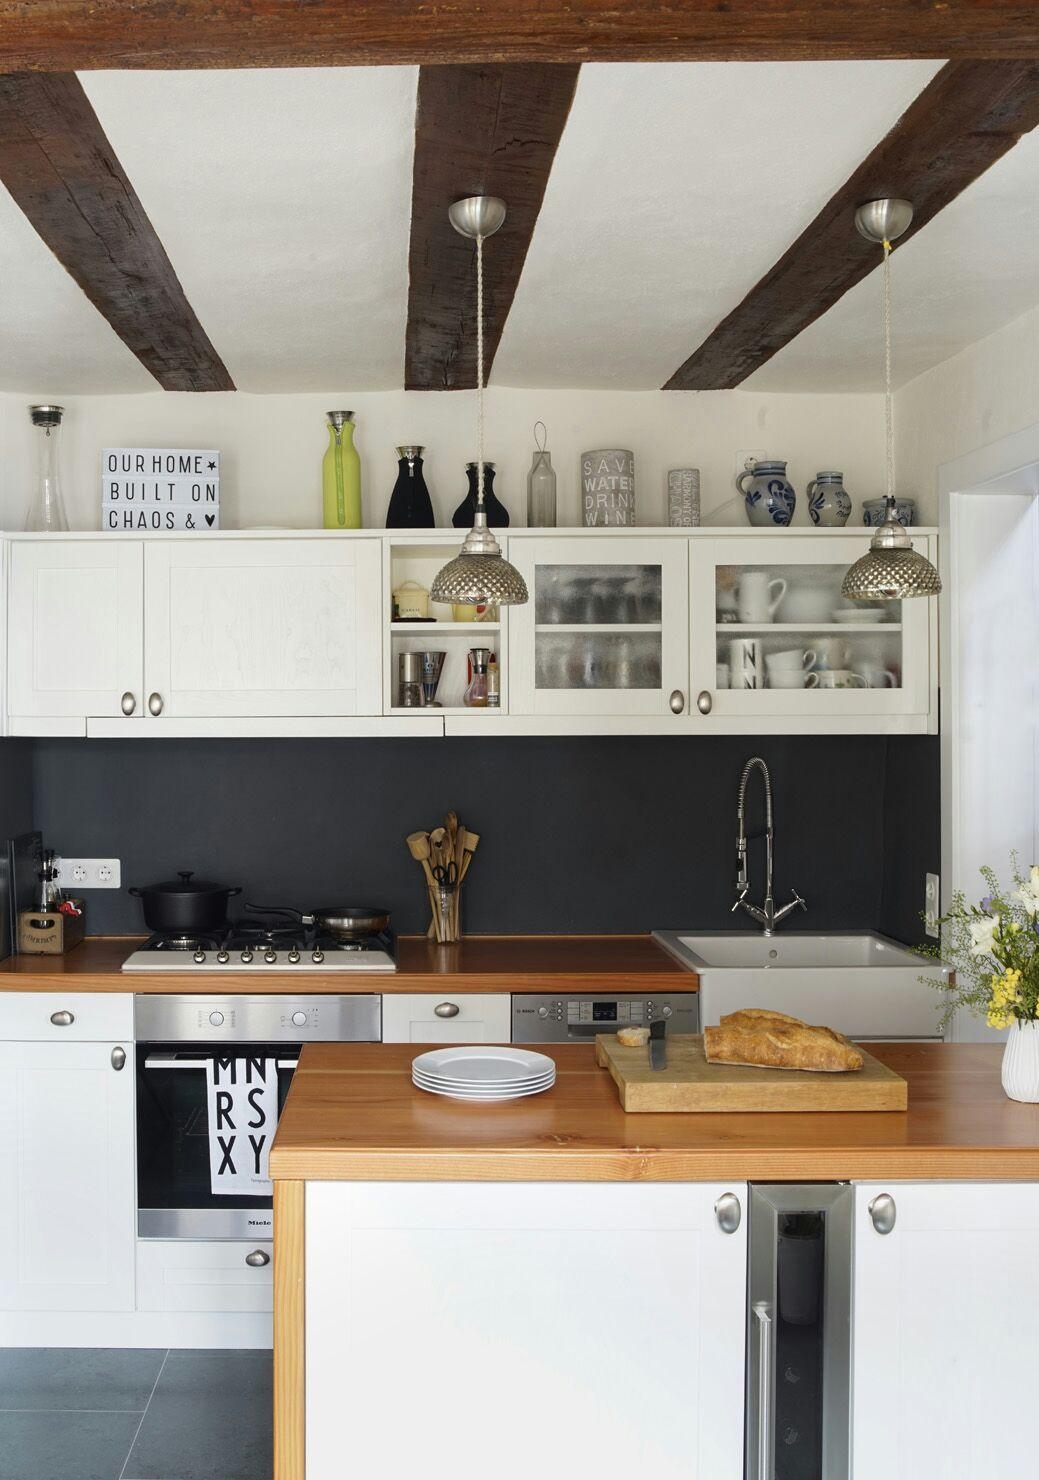 #grohebluehome
Der Hahn würdegut in unsere Küche passen und schont die Umwelt